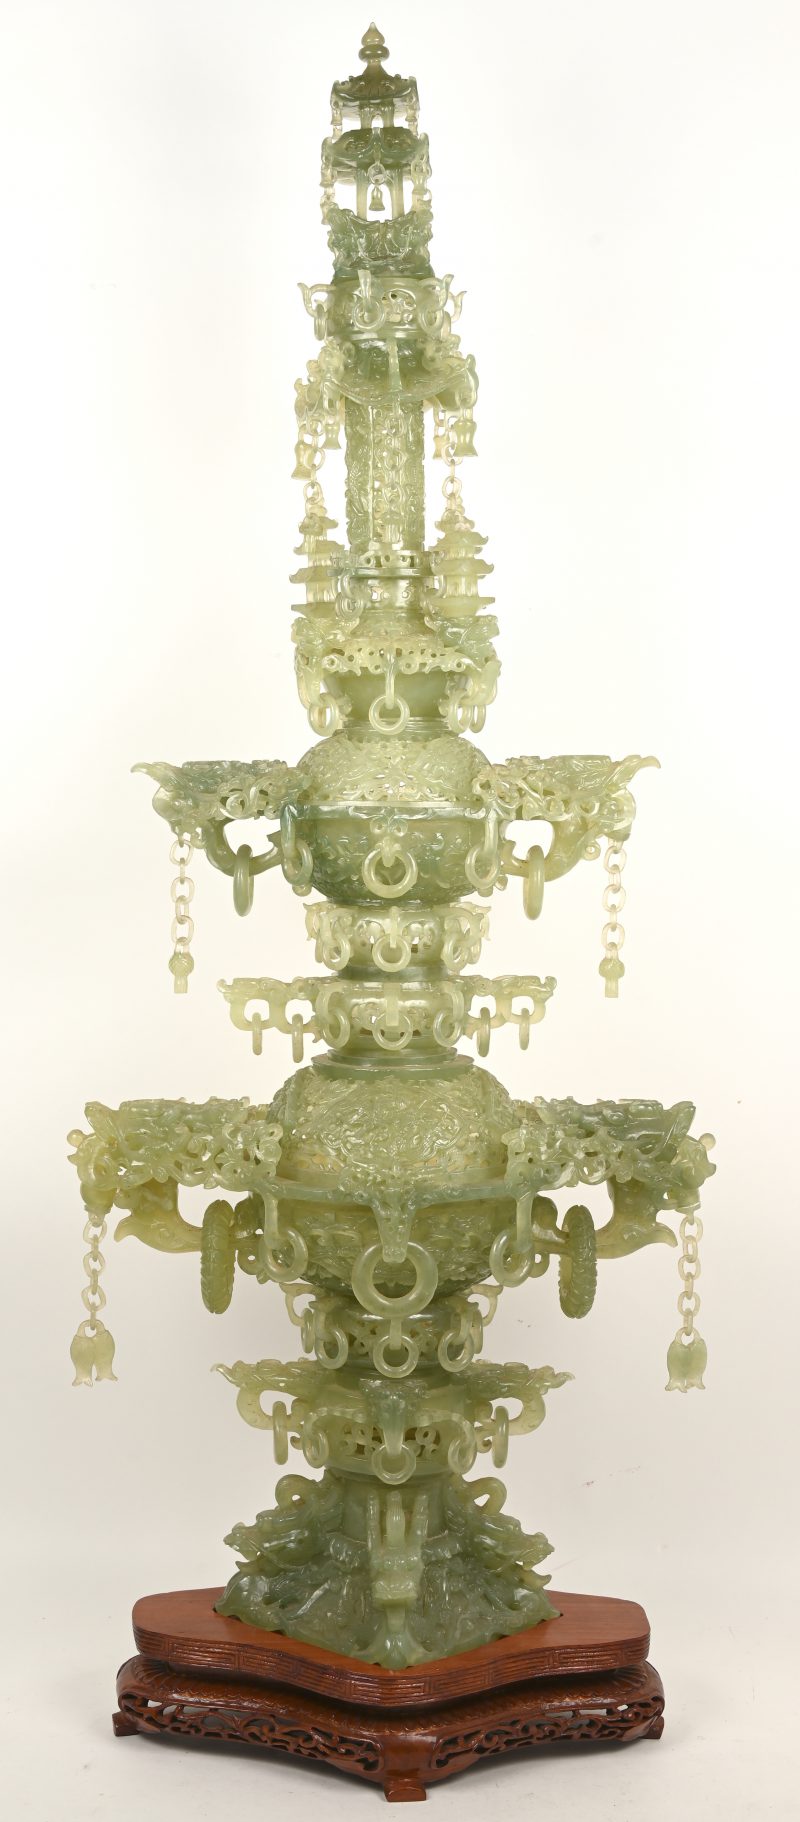 Een 3-delig Aziatisch wierrookvat uit Jade. Op houten sokkel, afgebeeld met ringen, pagodes, drakenhoofden en diverse elementen.